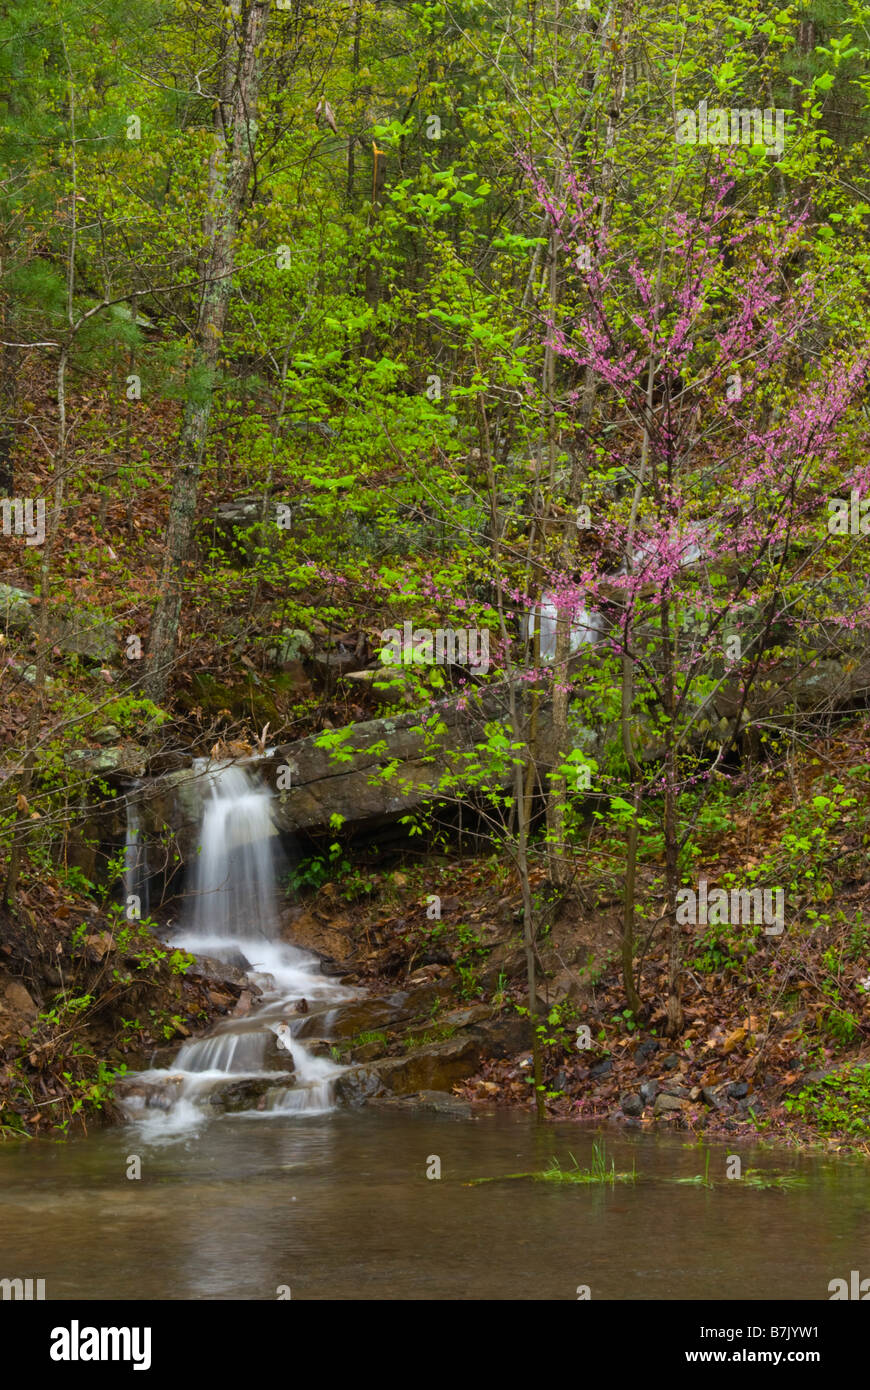 Une cascade cascades en bas d'une colline dans un pool de Vernal le Shenandoah Valley en avril. Un redbud tree fleurit à proximité. Banque D'Images